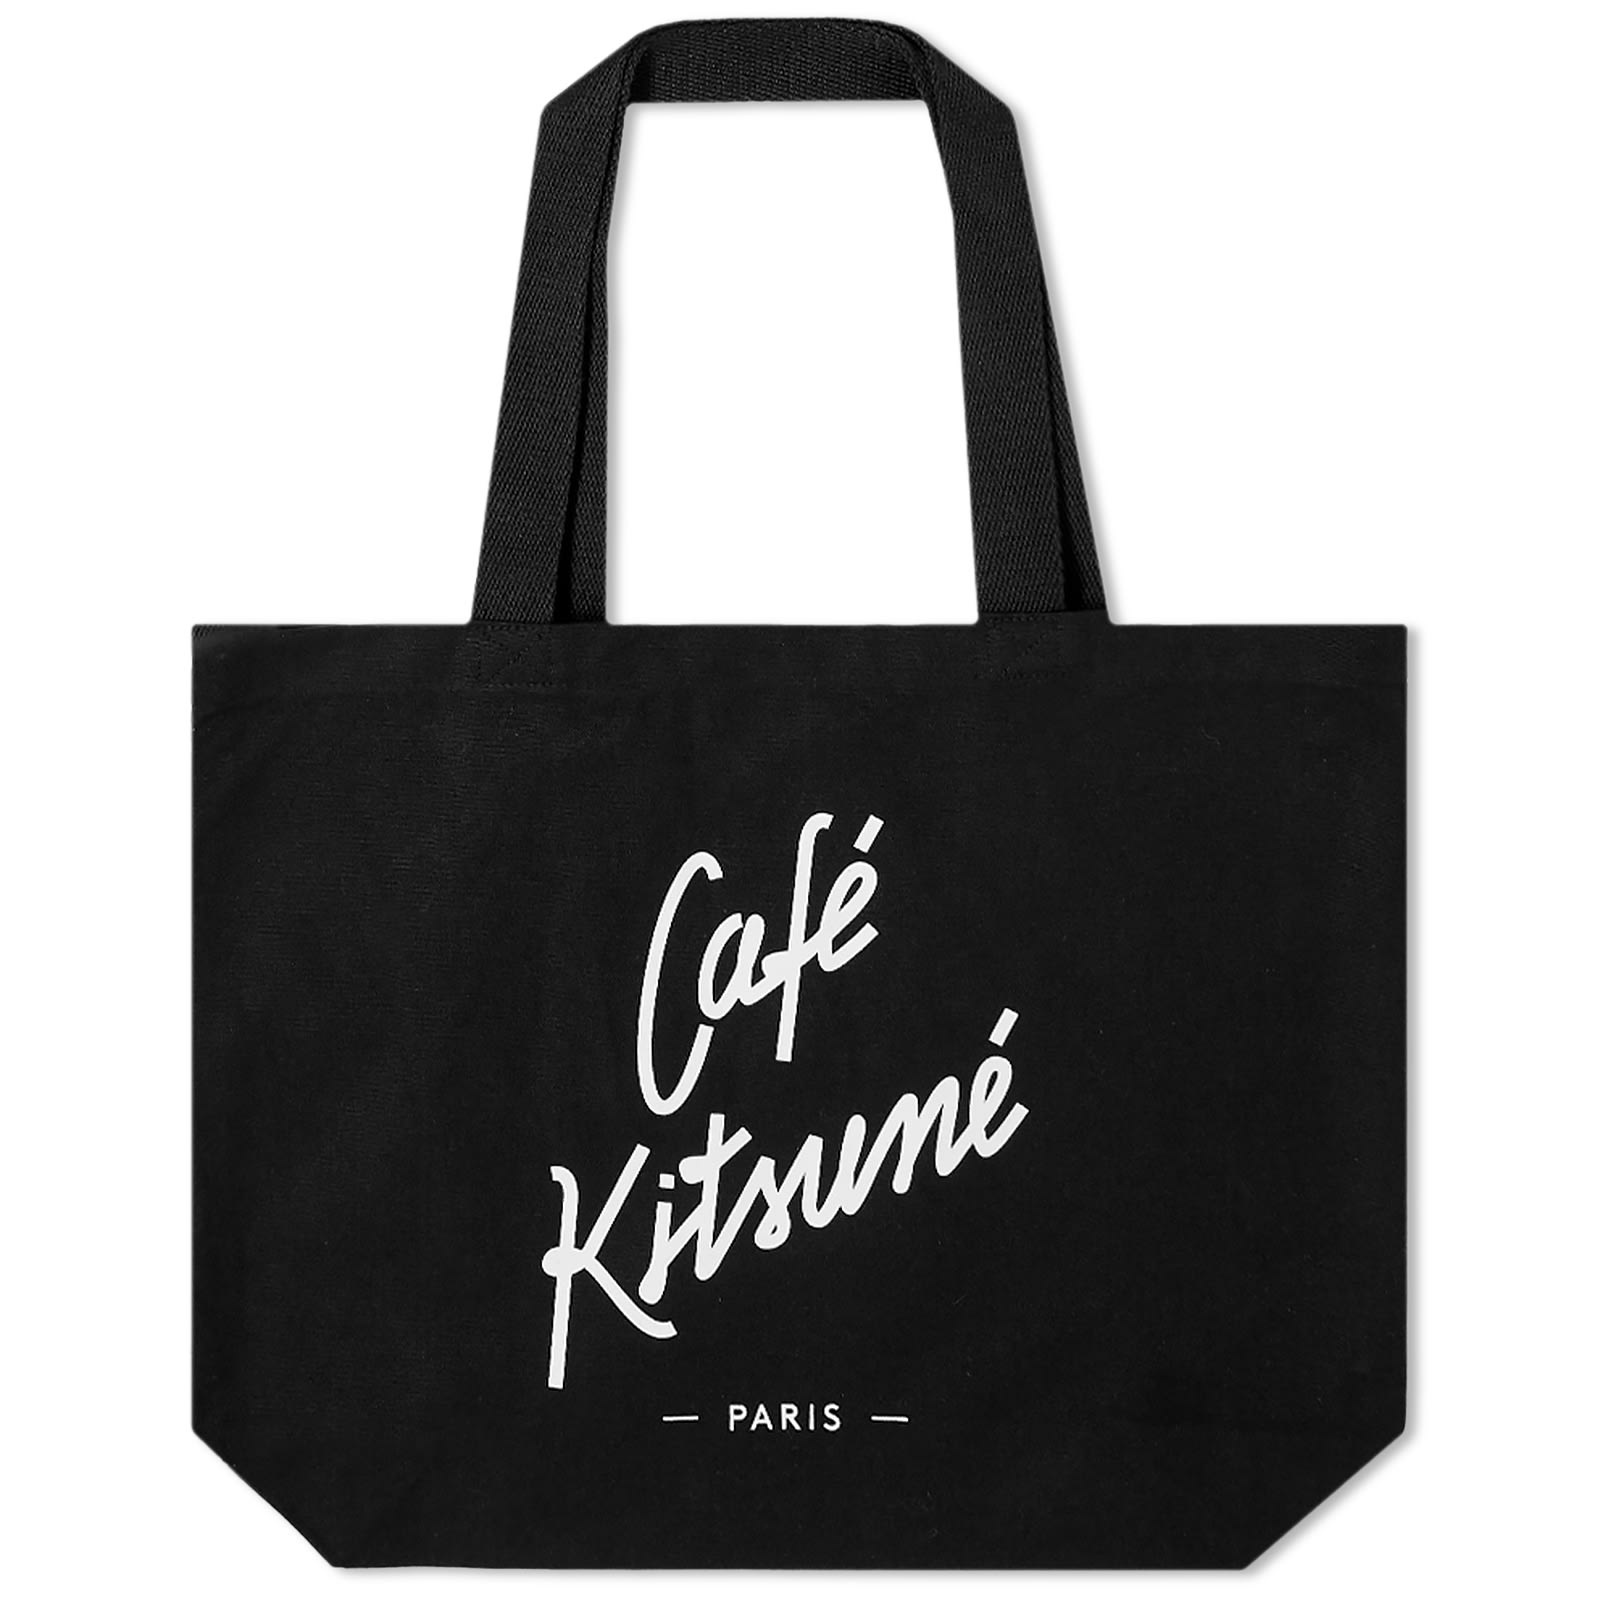 Cafe Kitsuné Tote Bag - 1